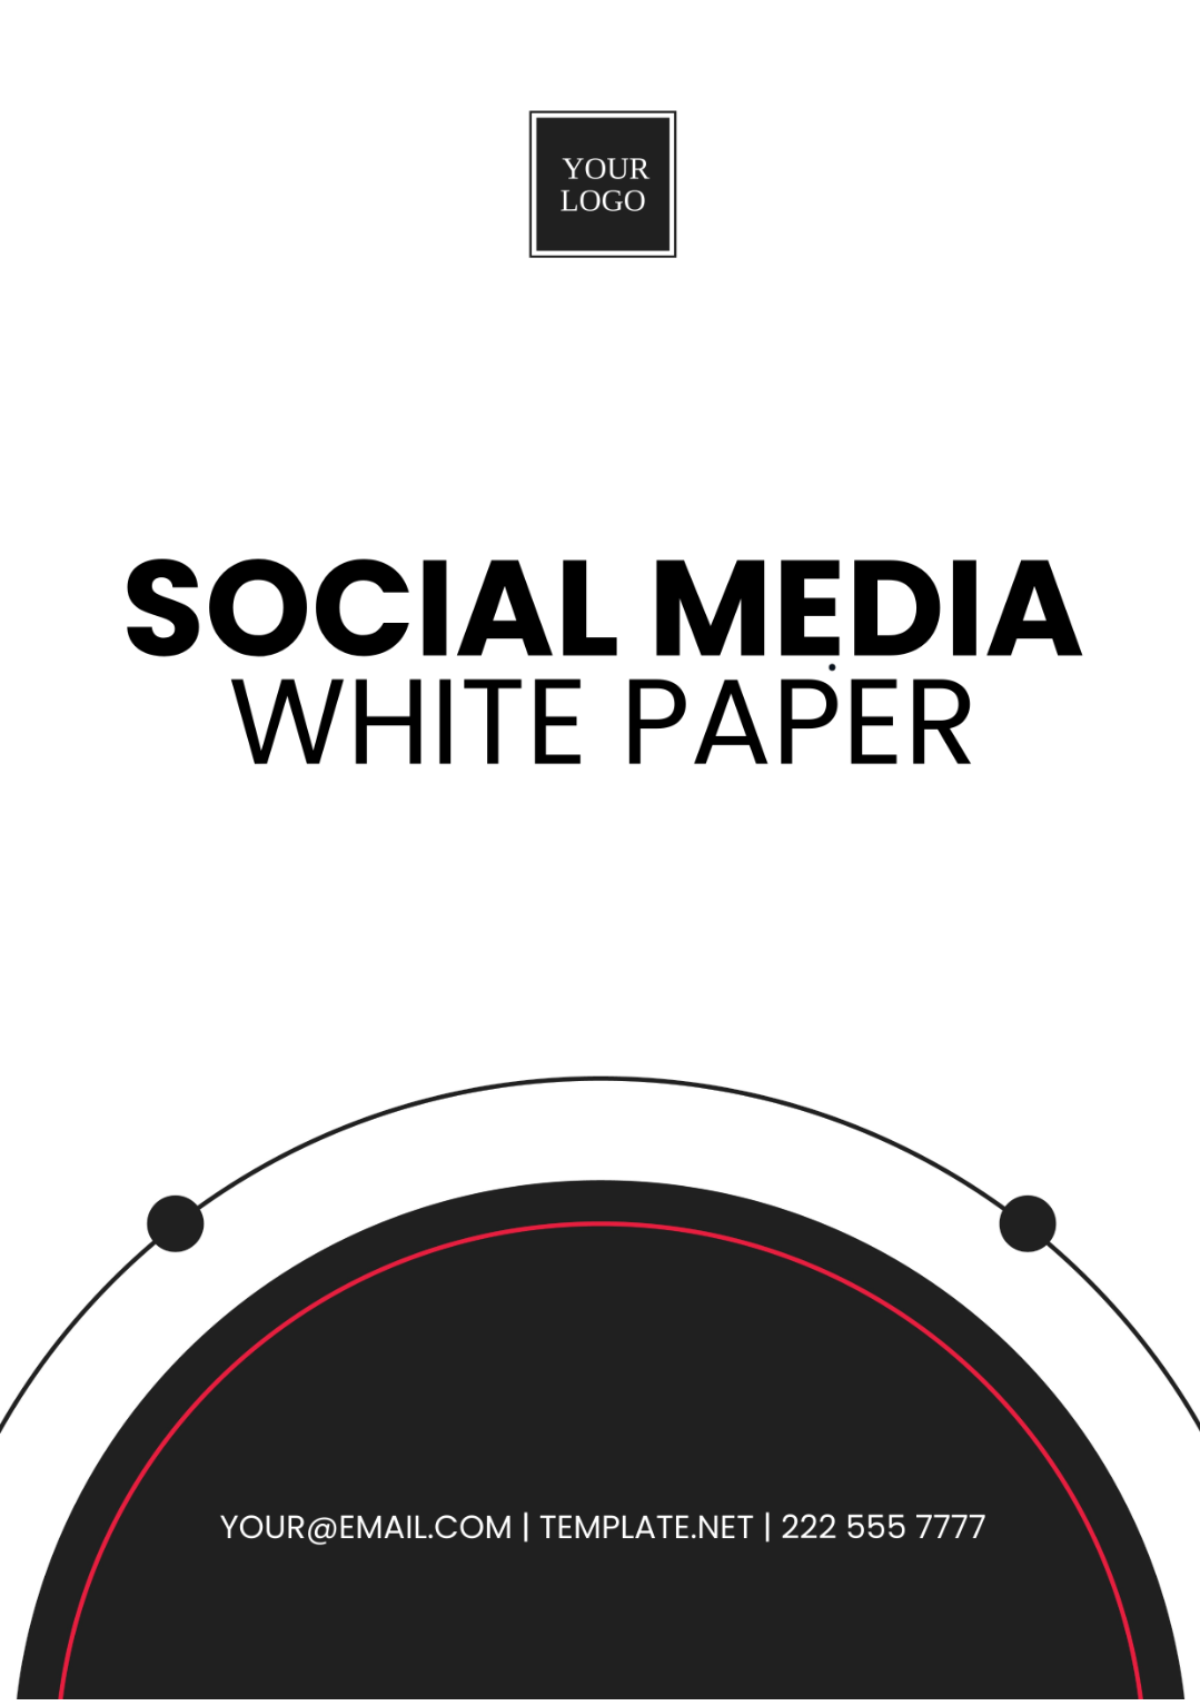 Social Media White Paper Template